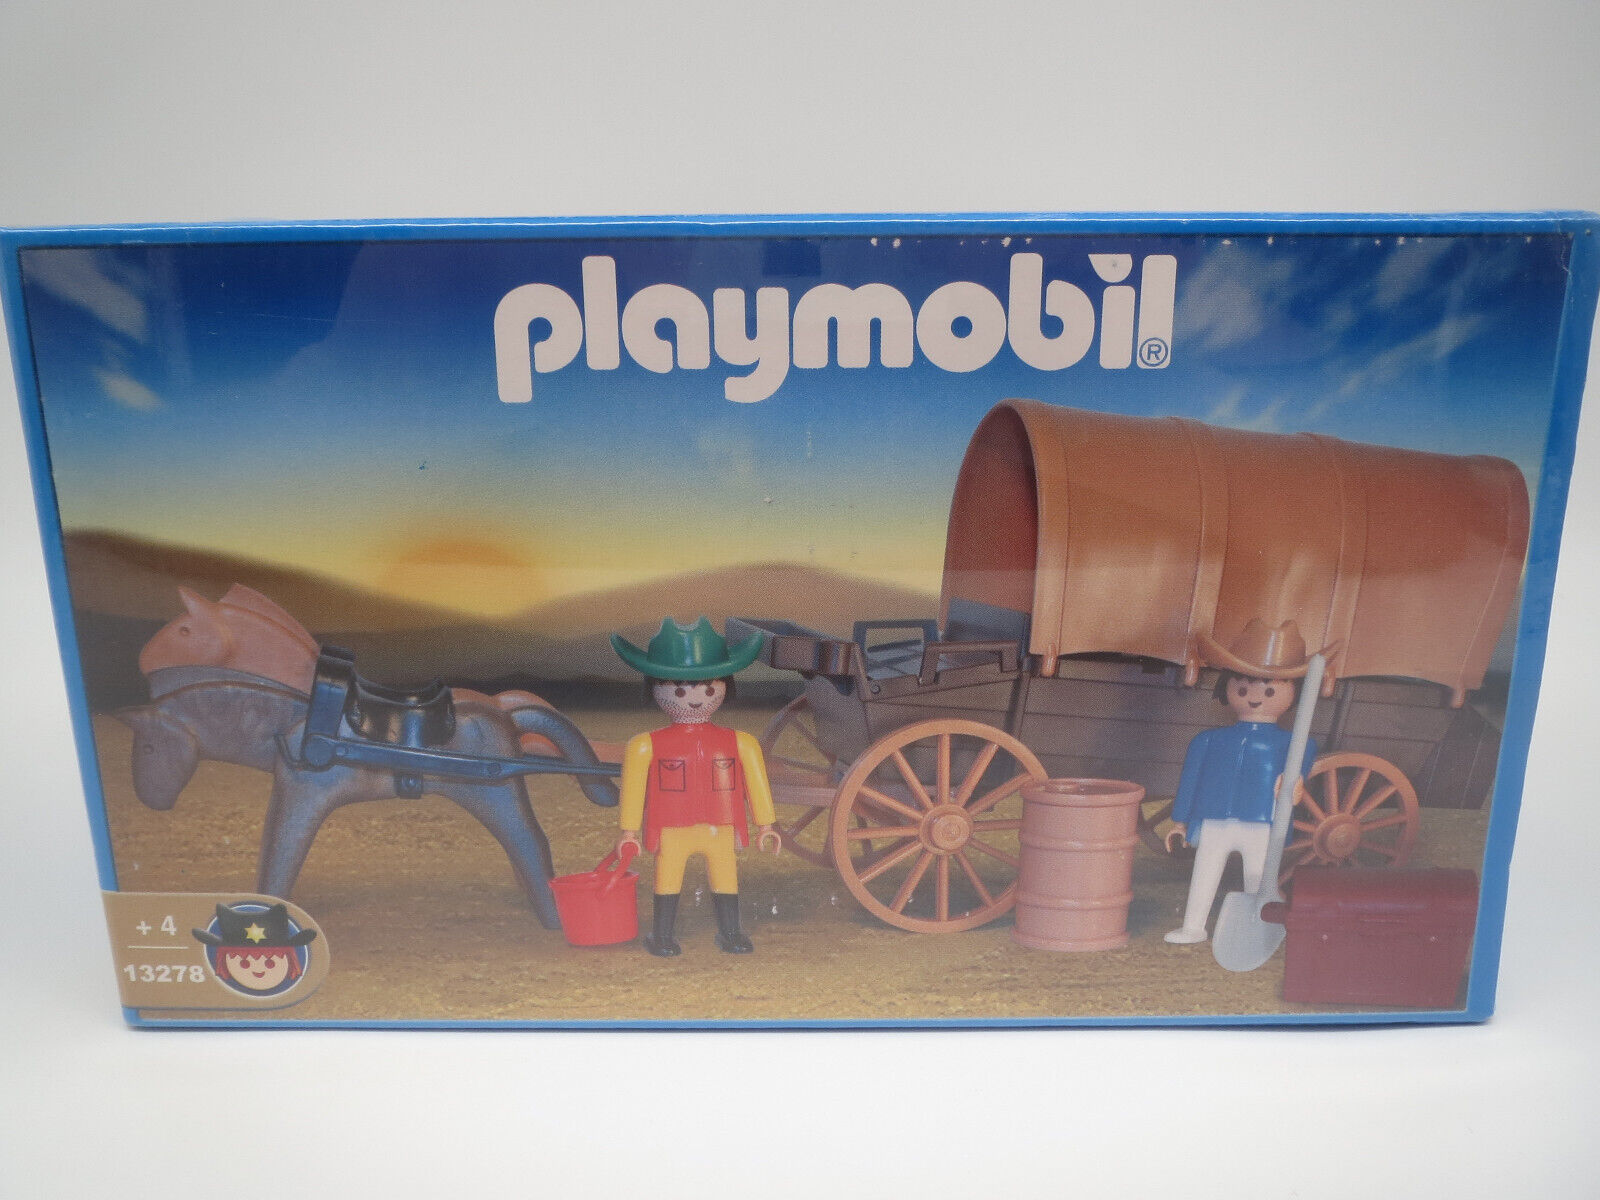 Playmobil 13278 ANTEX "Western-Planwagen" NEU & OVP (in Folie verschweit) RAR!